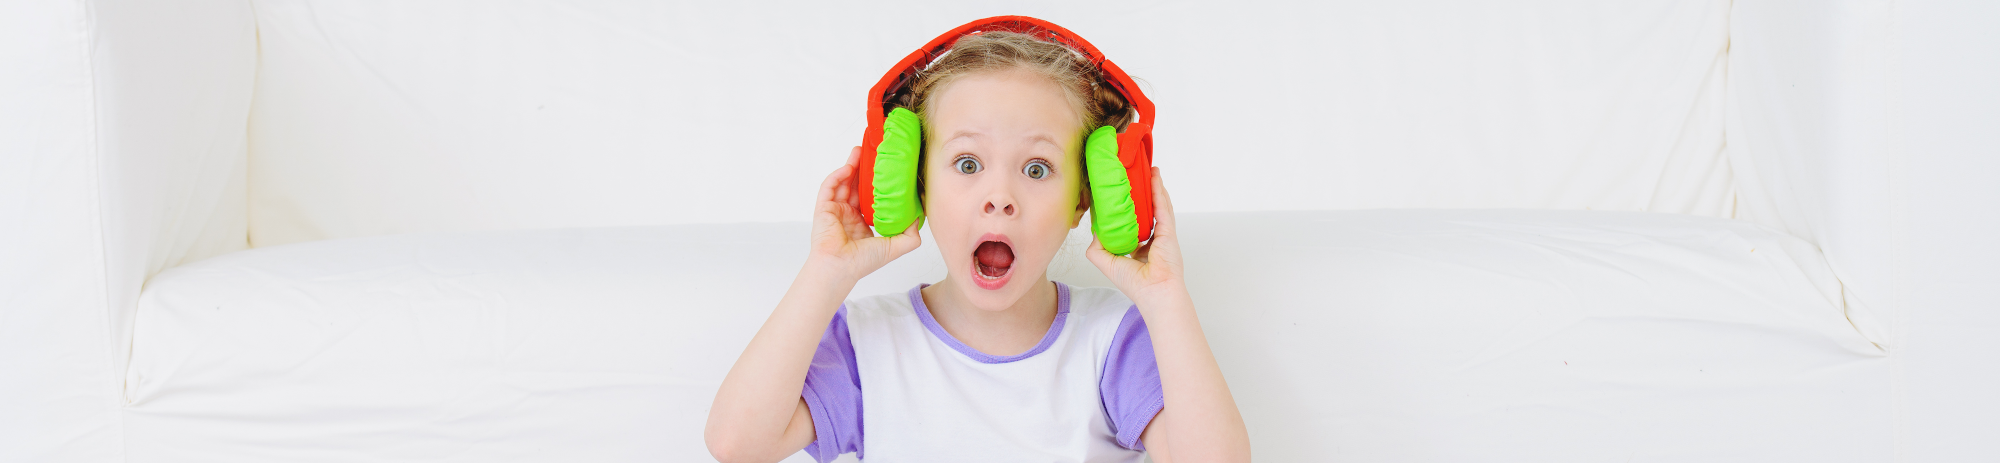 Kind mit Kopfhörern schützt sich gegen Lärm 